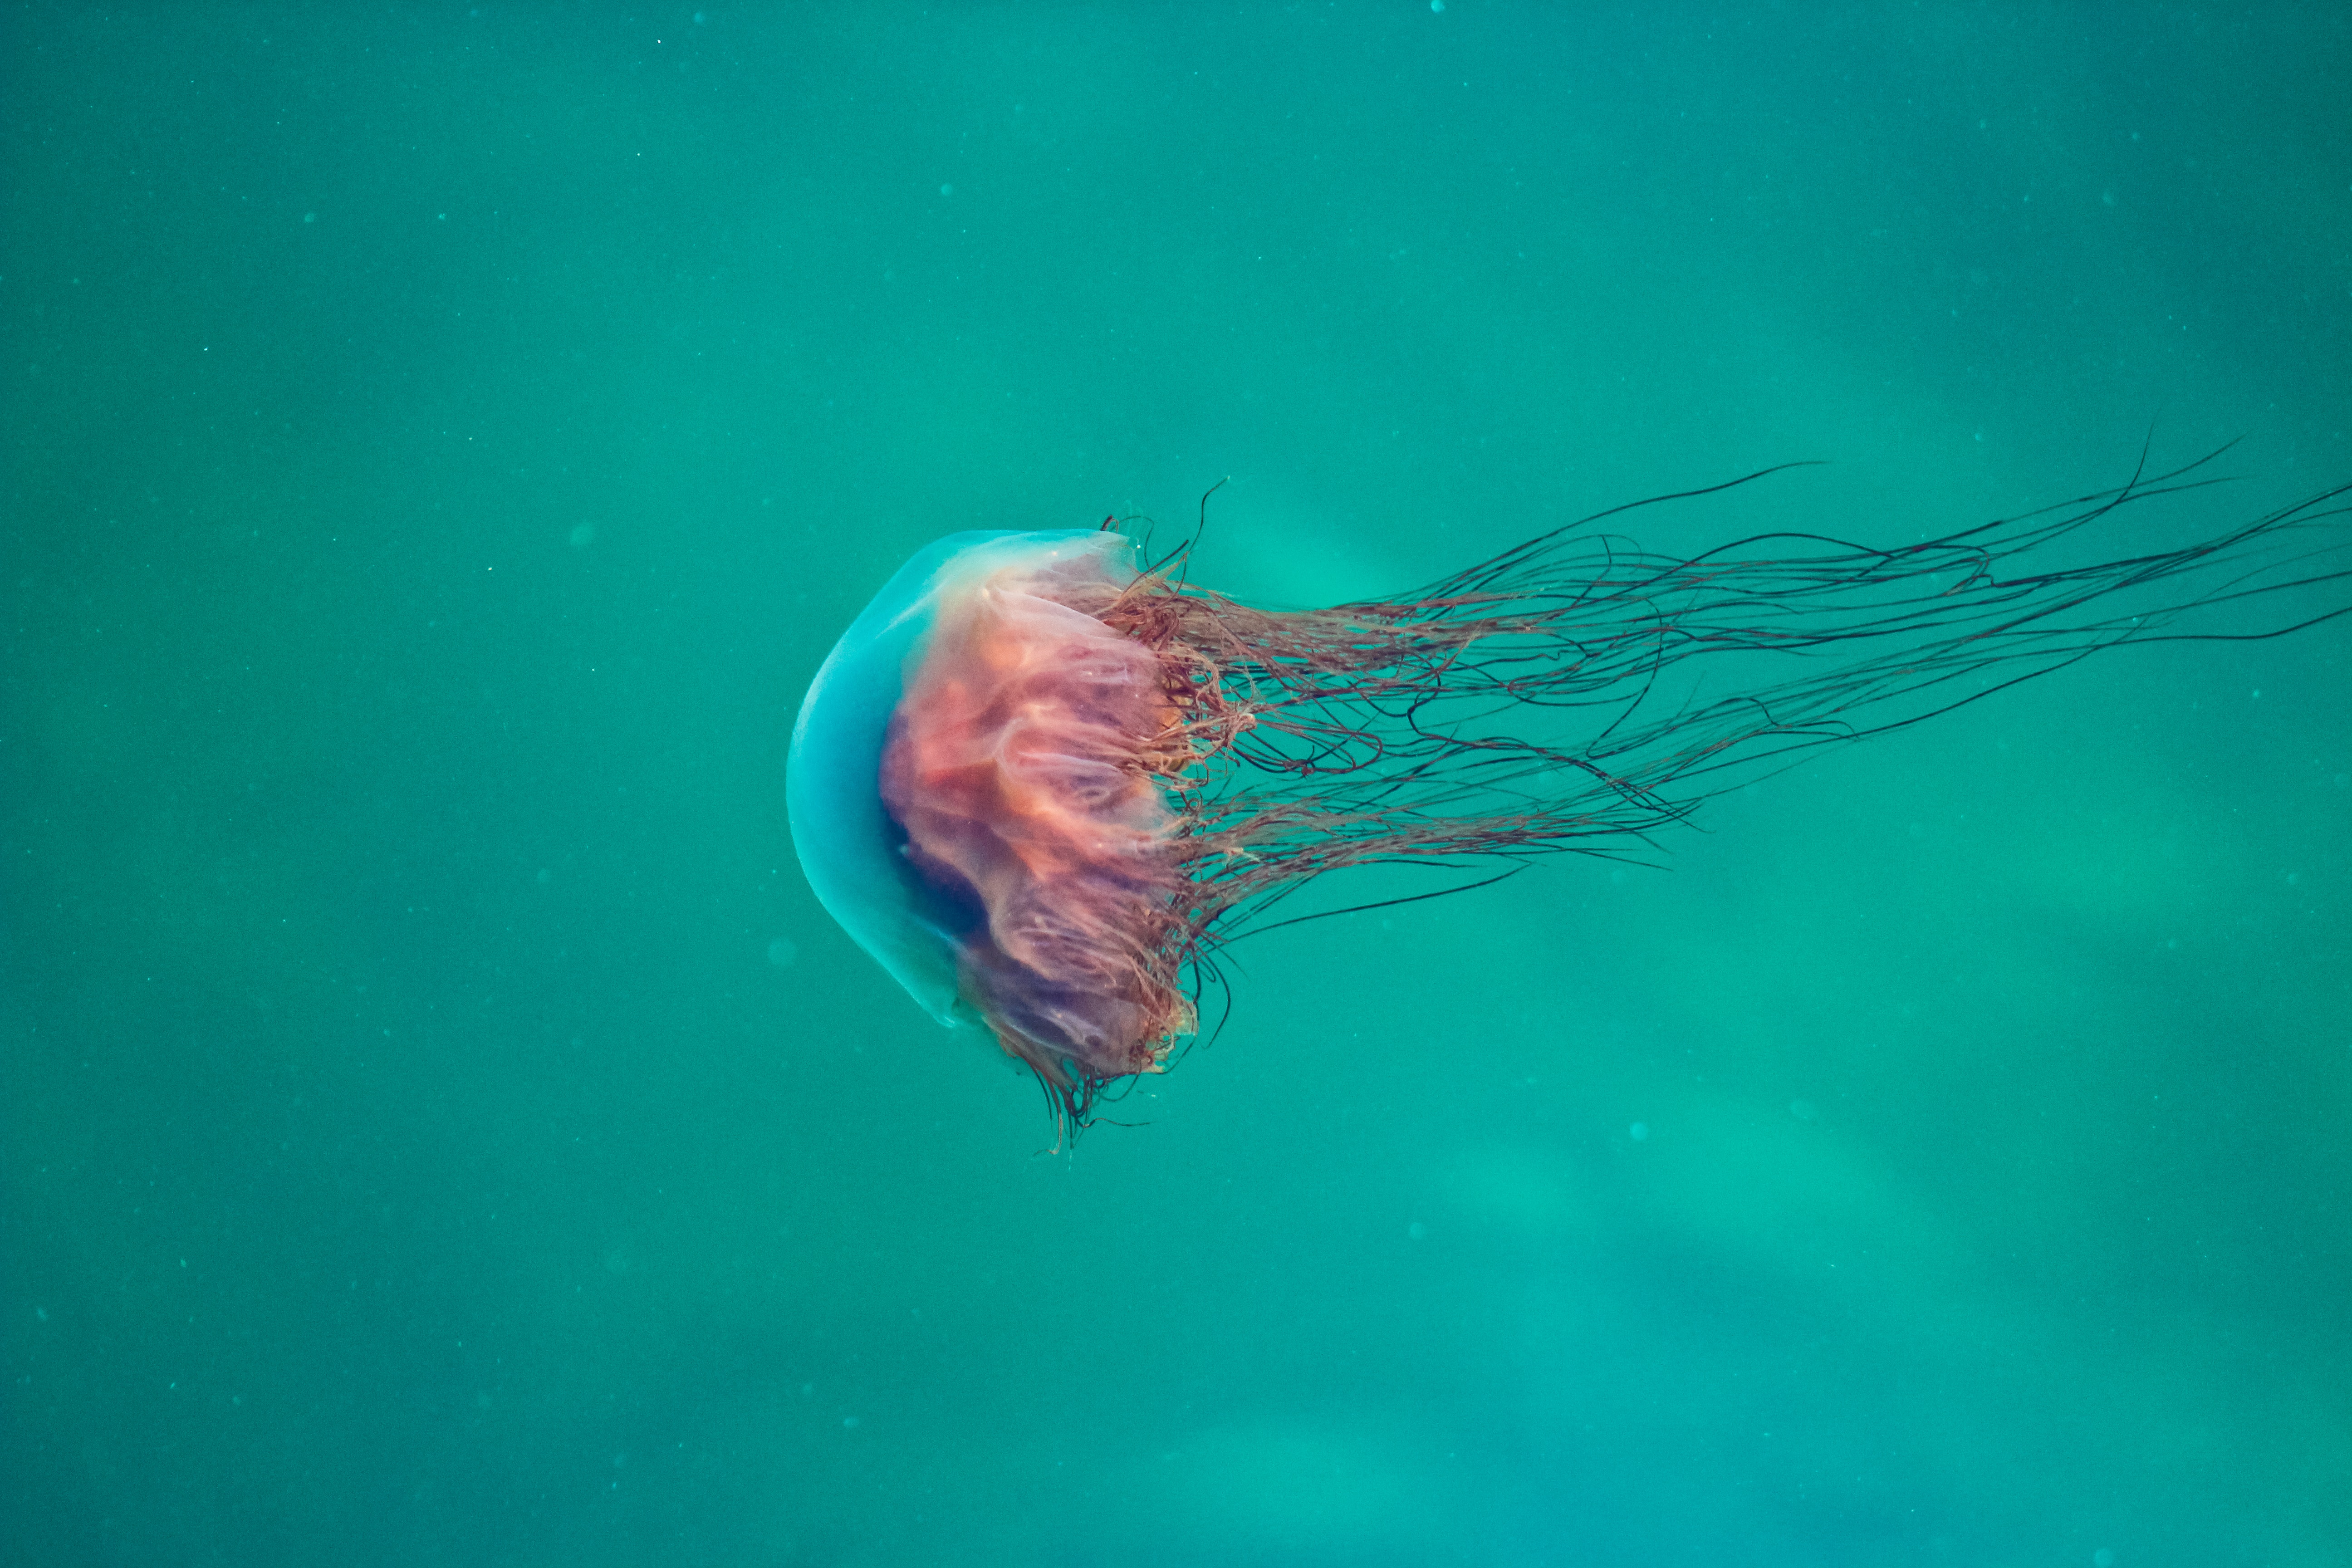 A pink jellyfish underwater